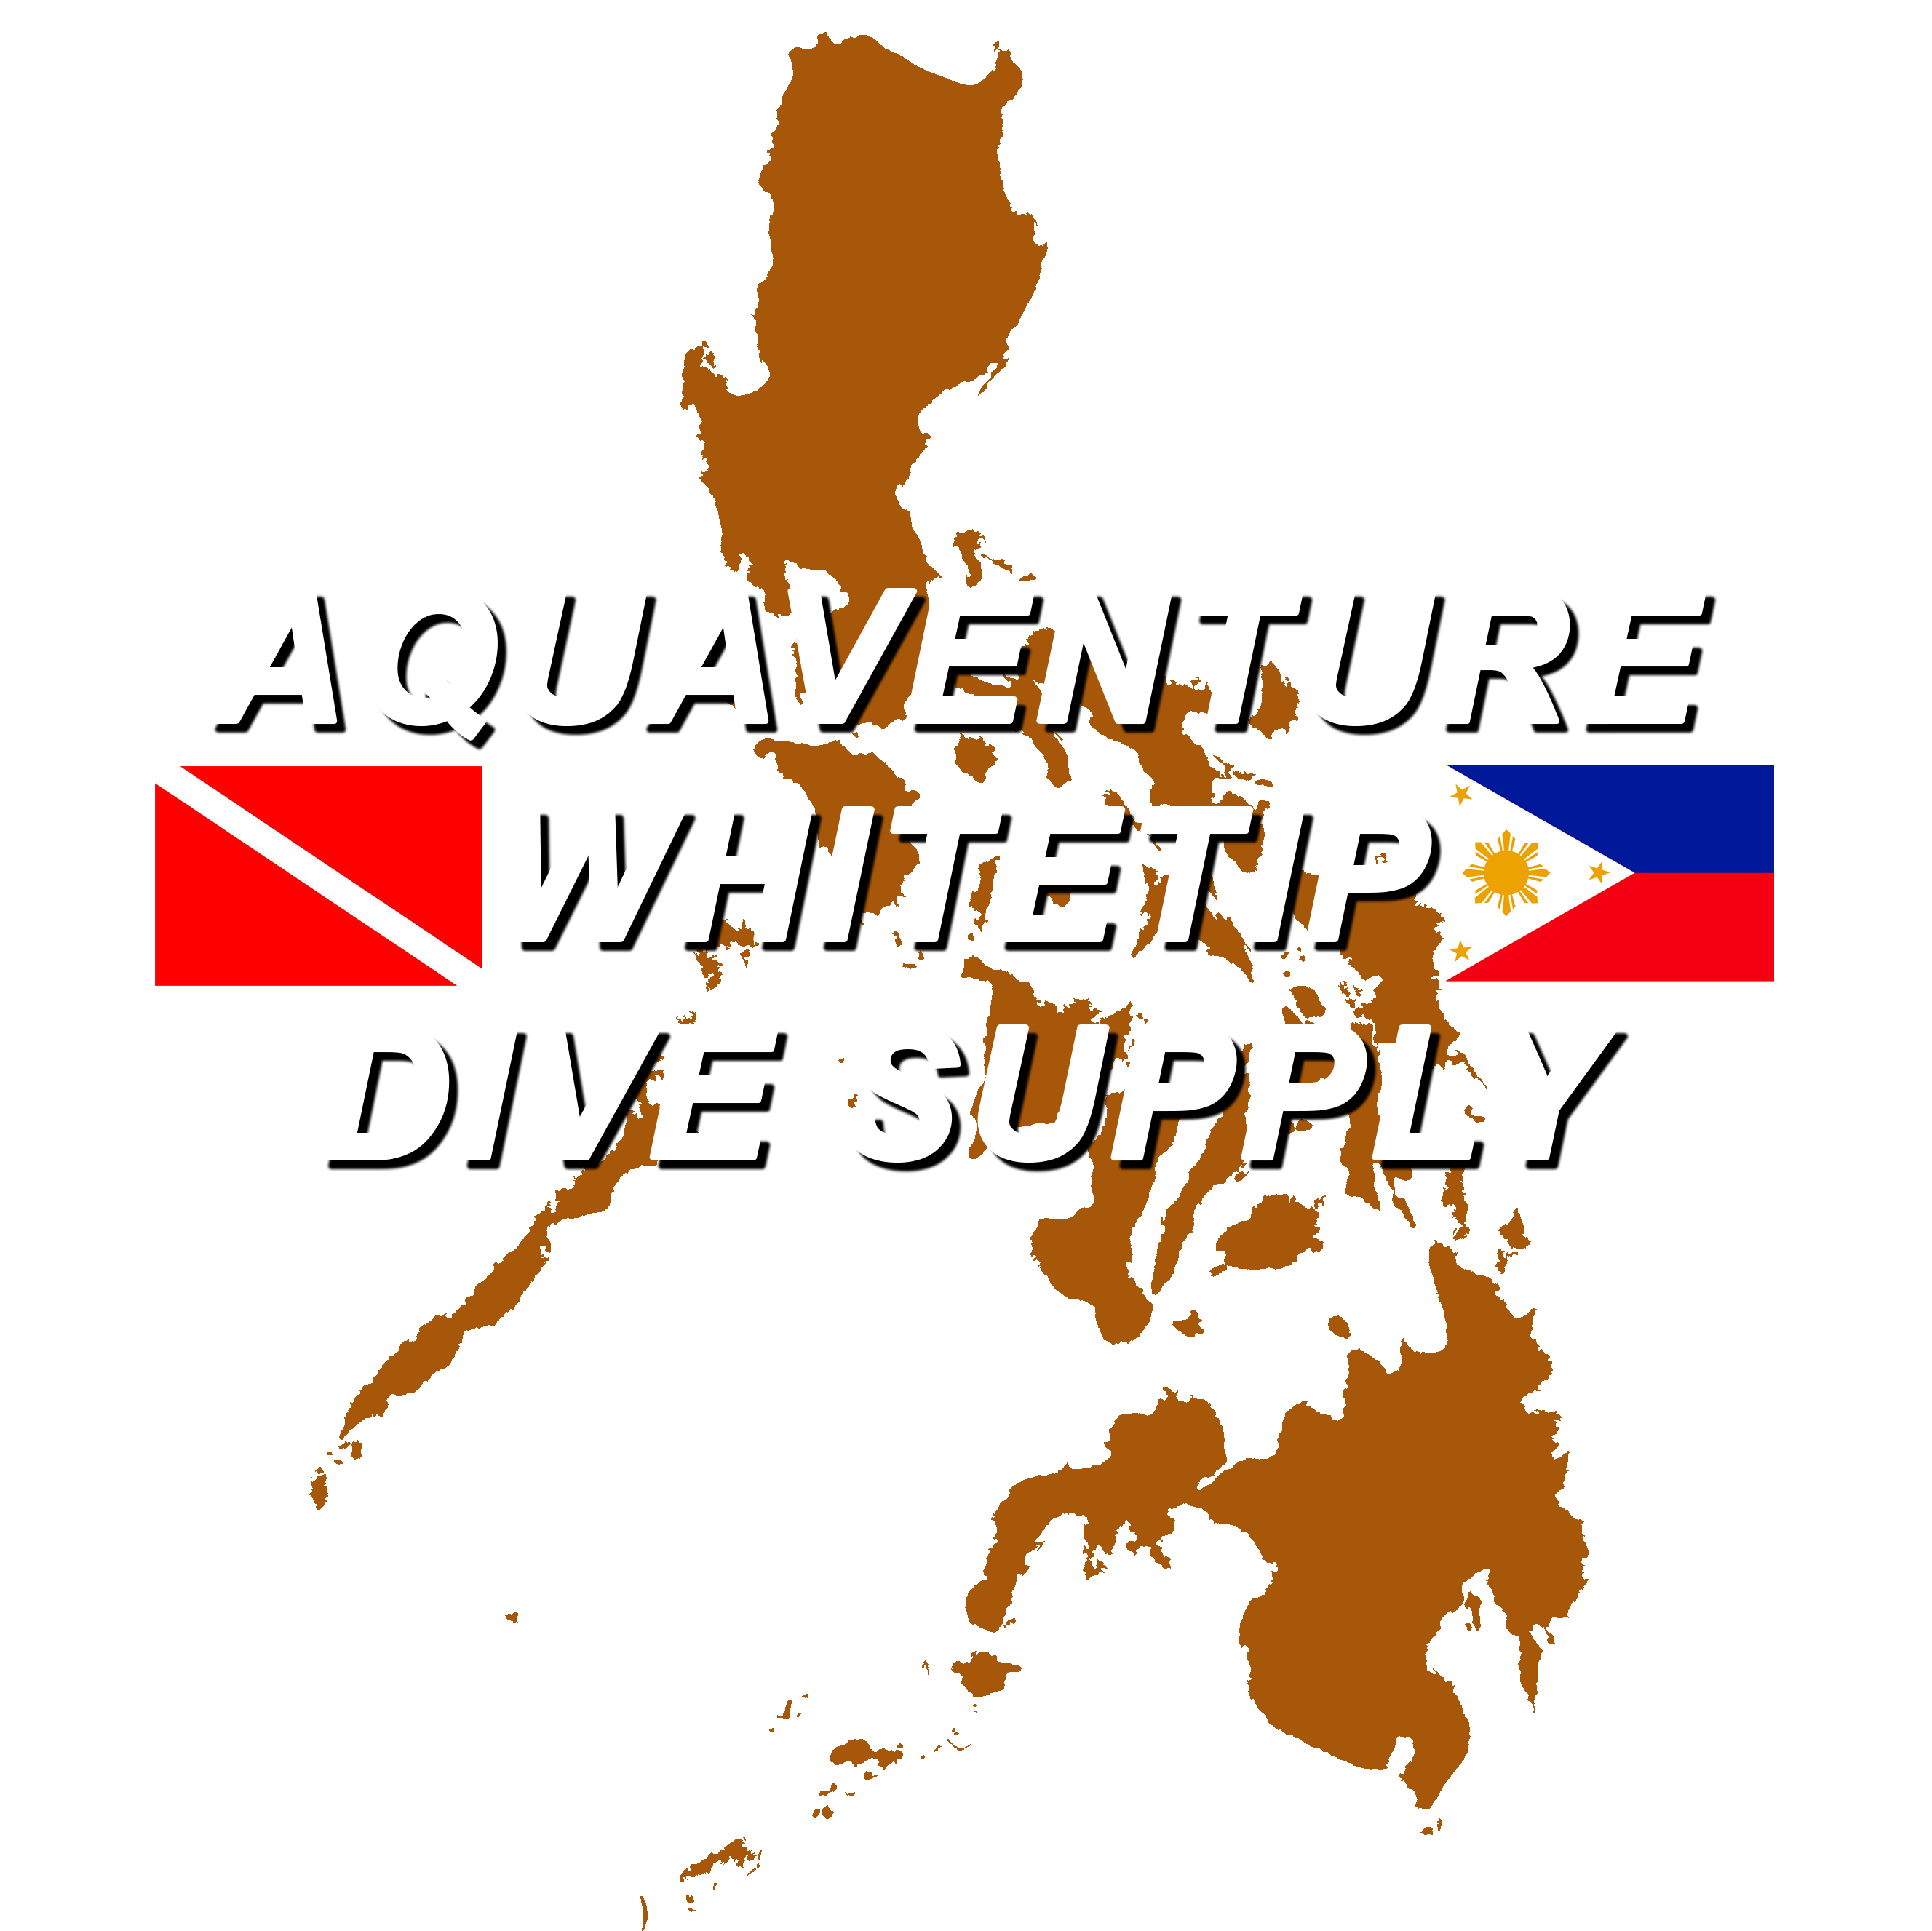 Aquaventure Whitetip Dive Supply